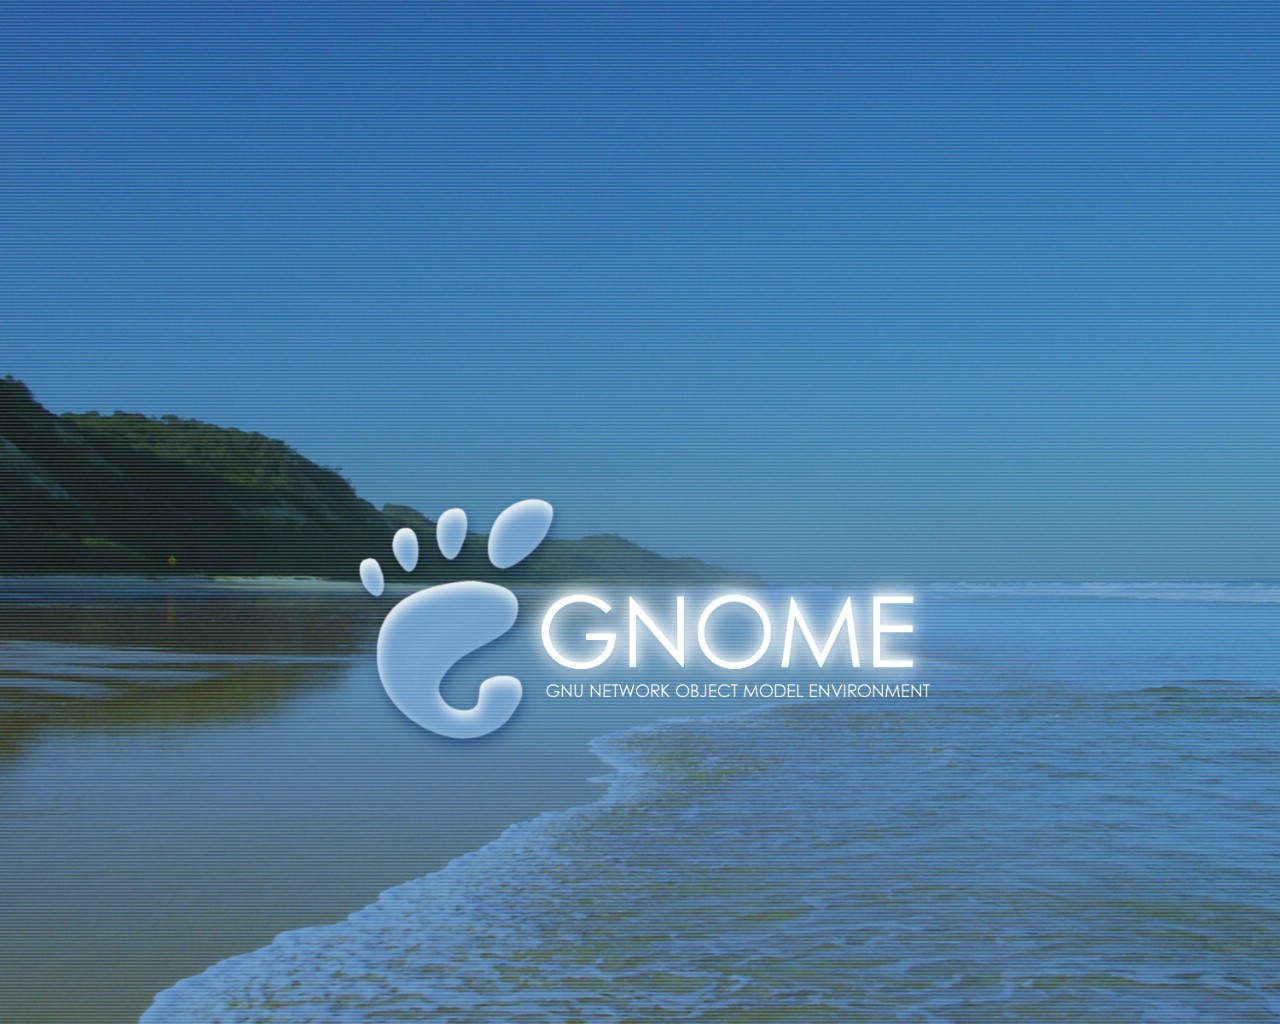 壁纸1280x10241600Gnome 1 15壁纸 Gnome 1600Gnome 第一辑壁纸 Gnome 1600Gnome 第一辑图片 Gnome 1600Gnome 第一辑素材 系统壁纸 系统图库 系统图片素材桌面壁纸